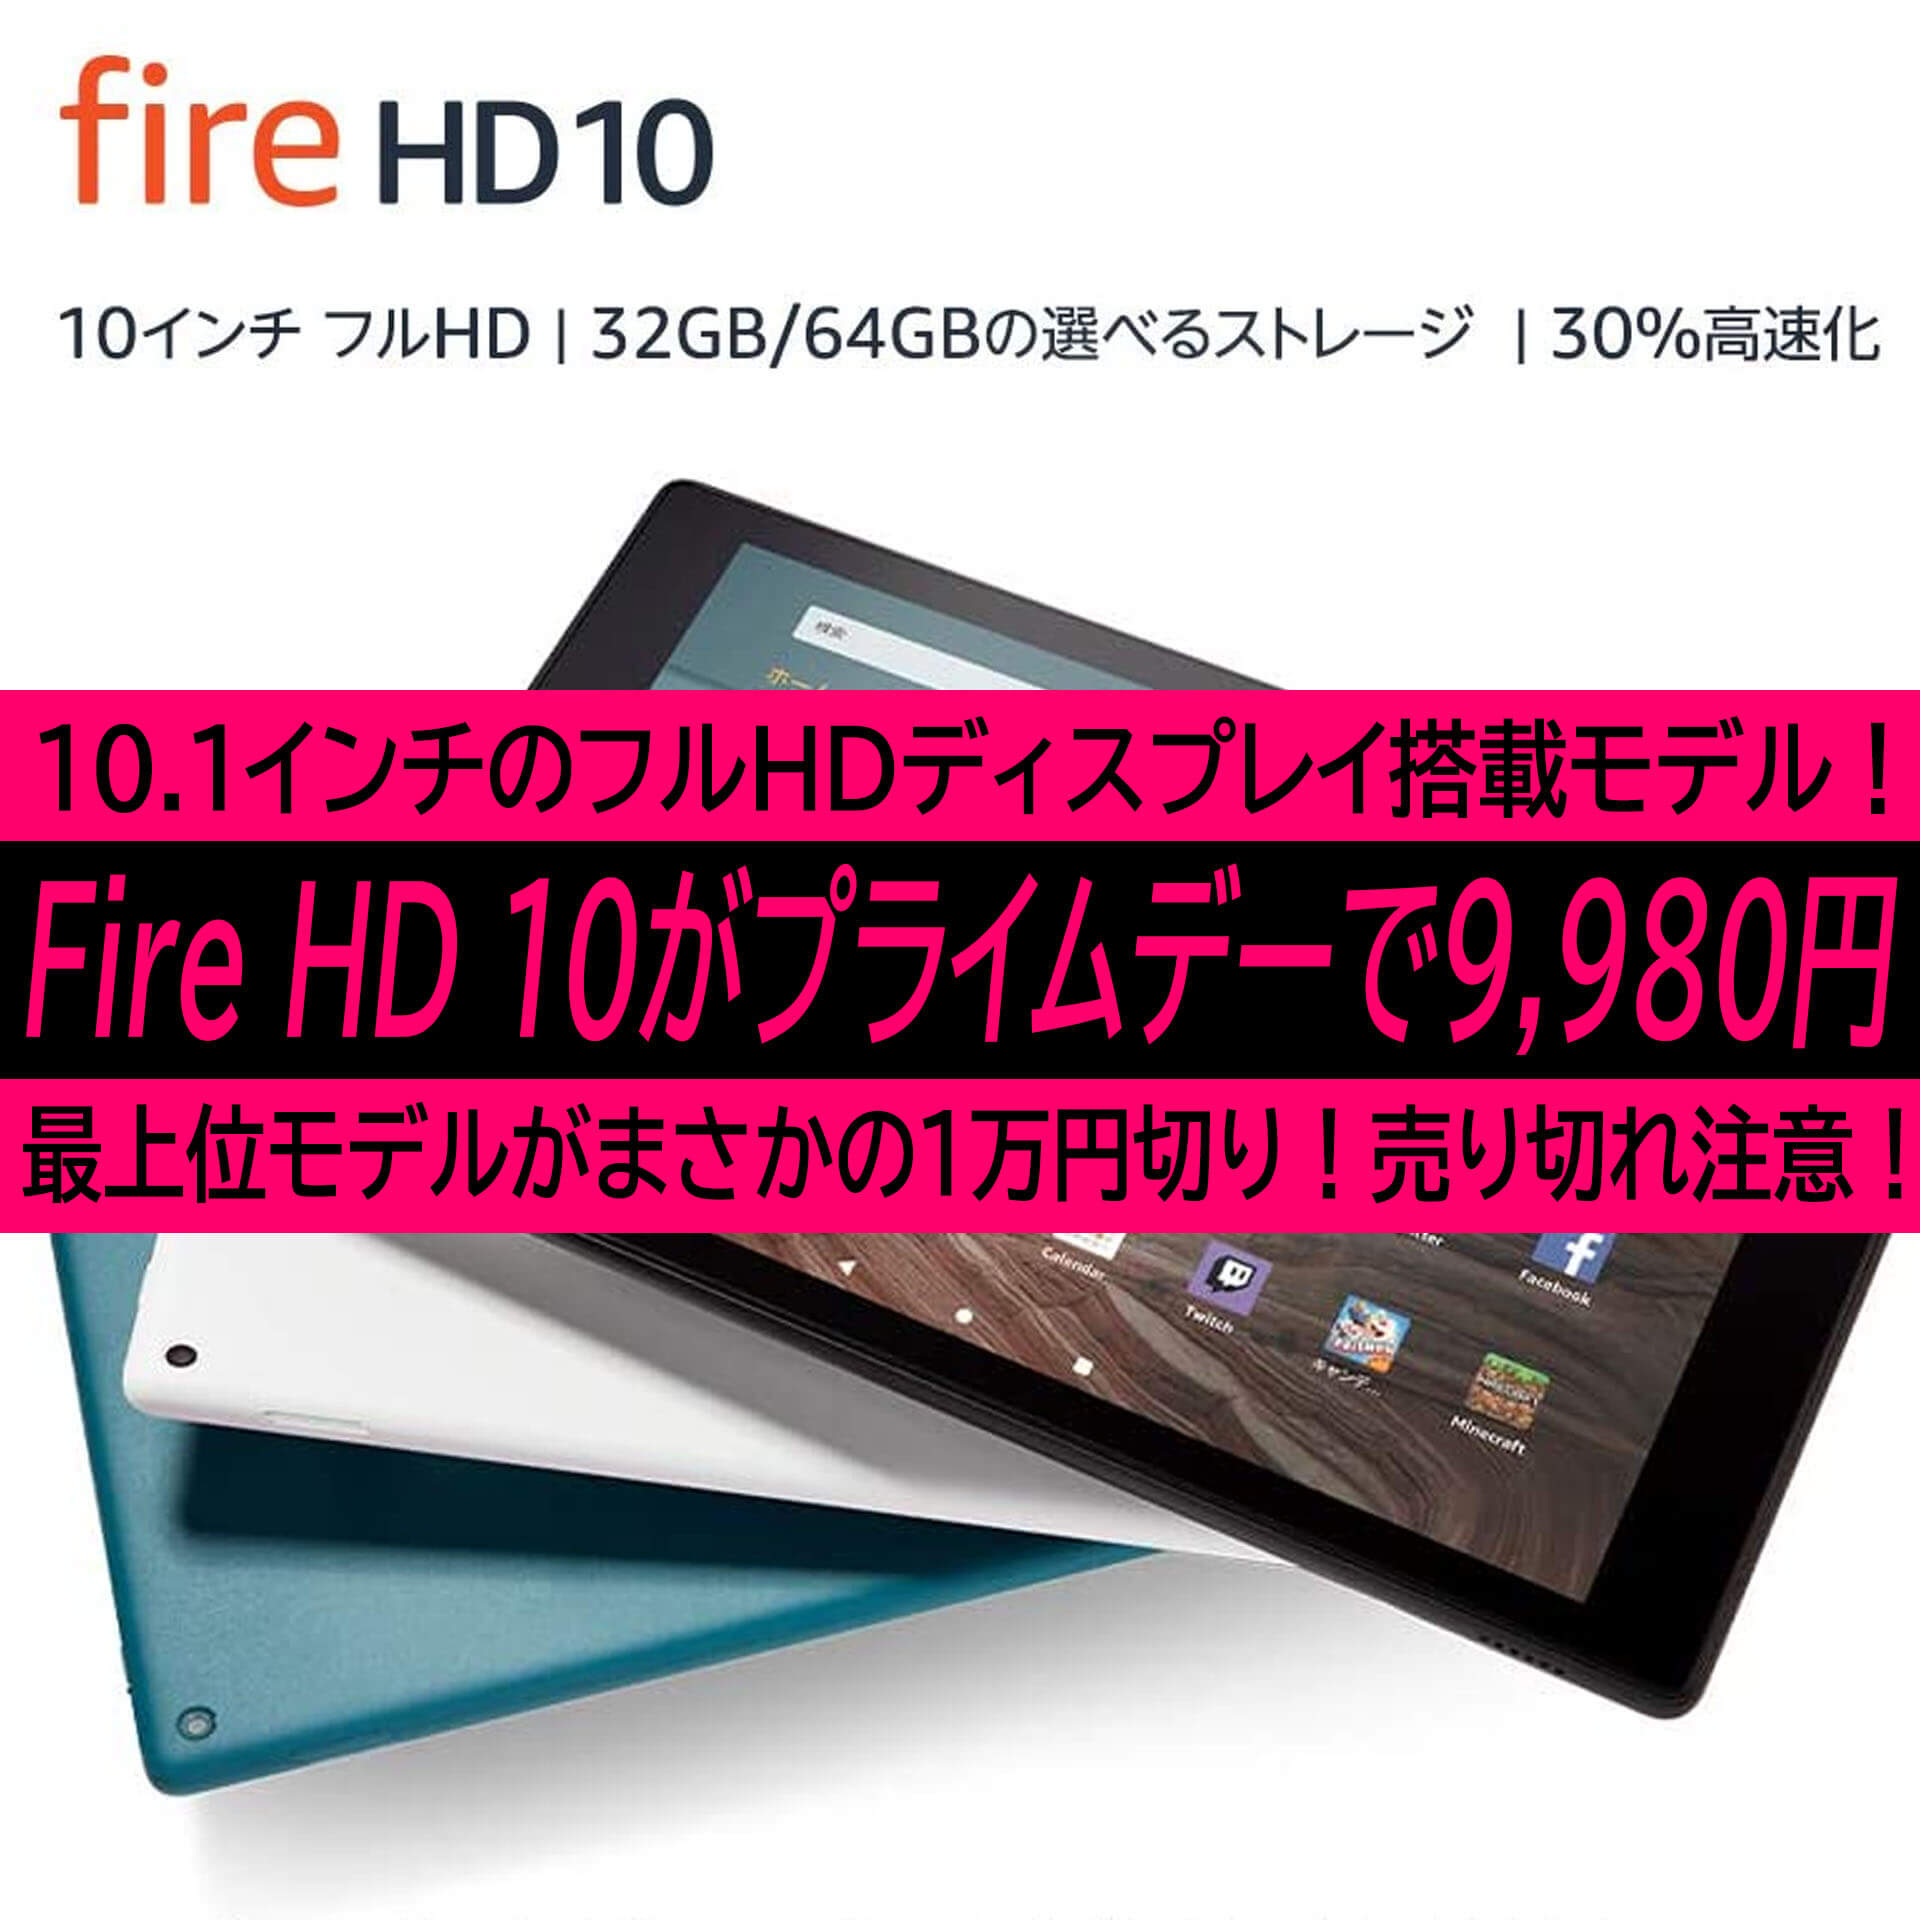 Fire HD 10が絶対に欲しくなる理由。Amazonプライムデーでまさかの ...